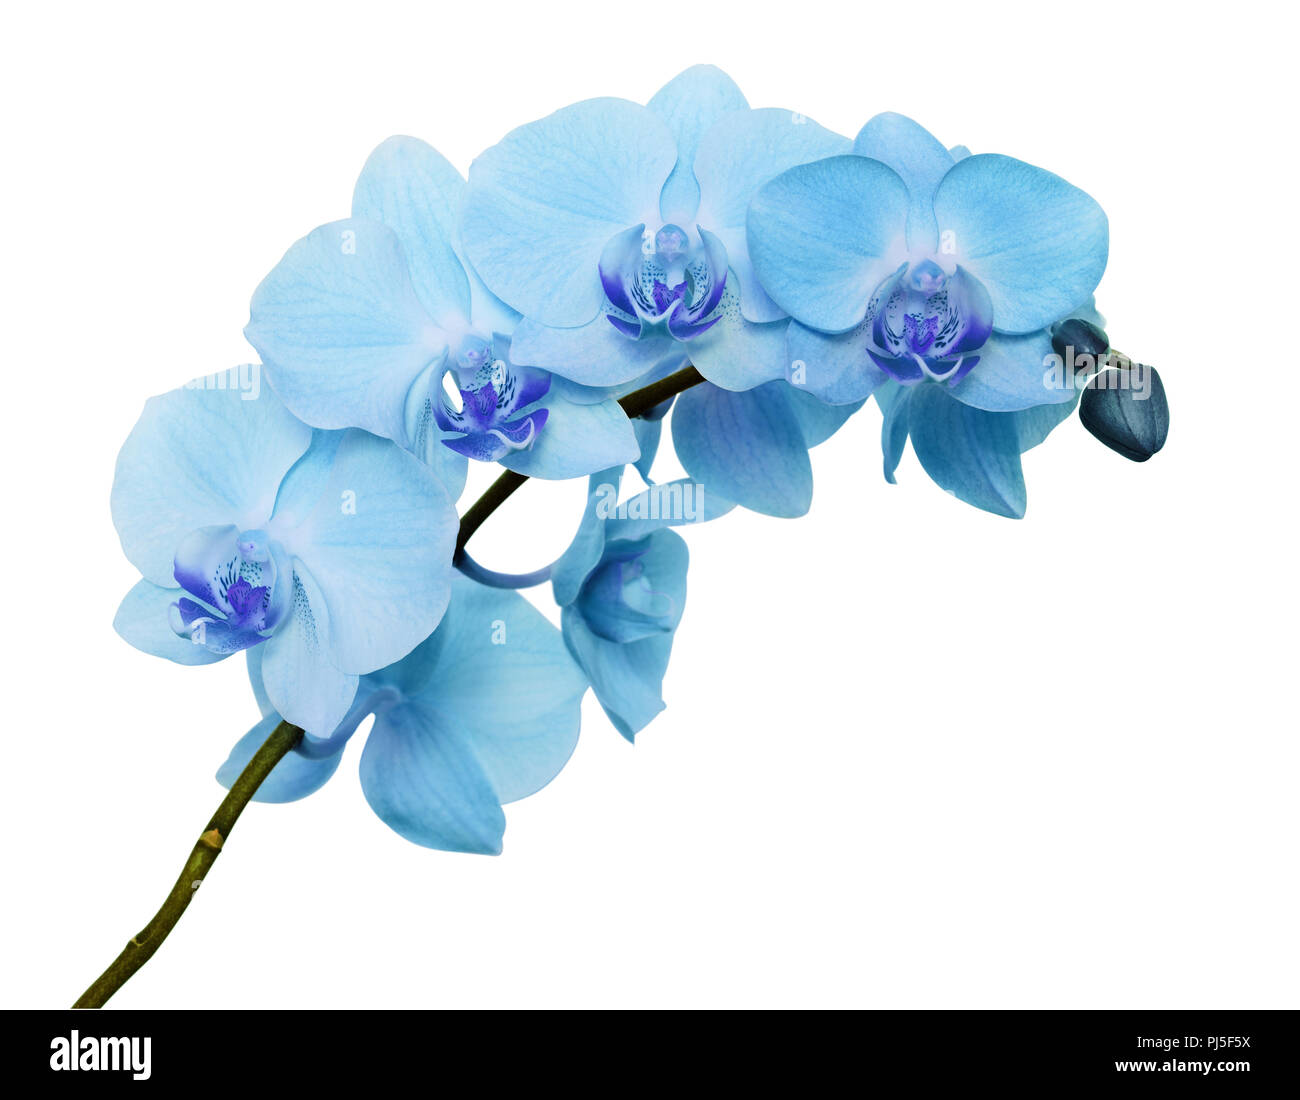 Blue orchid flowers Banque d'images détourées - Alamy